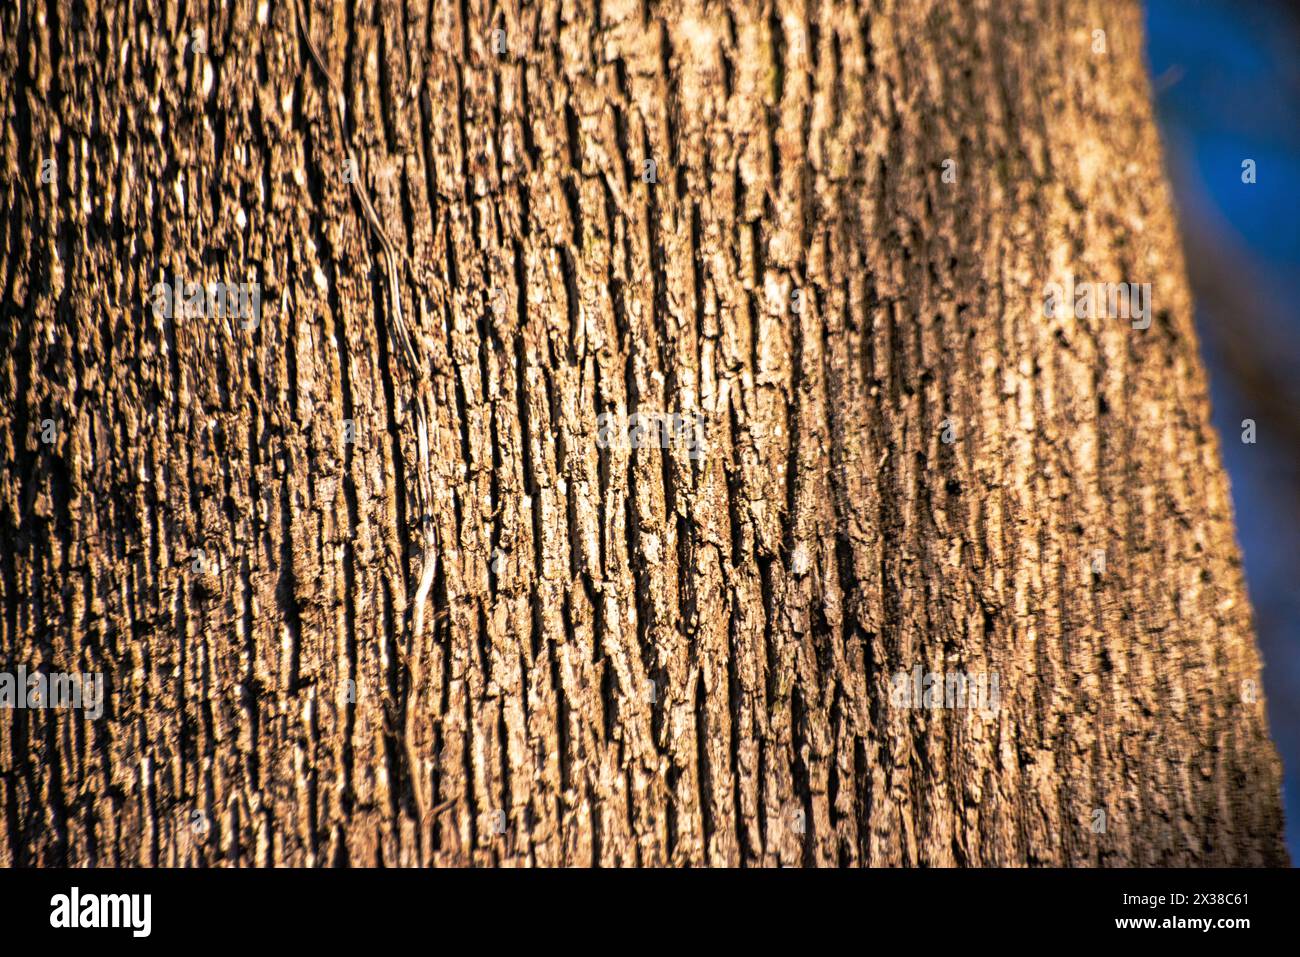 Una vista ravvicinata che rivela i dettagli e le texture intricati di un tronco di albero maestoso, catturando la bellezza della natura da vicino. Foto Stock